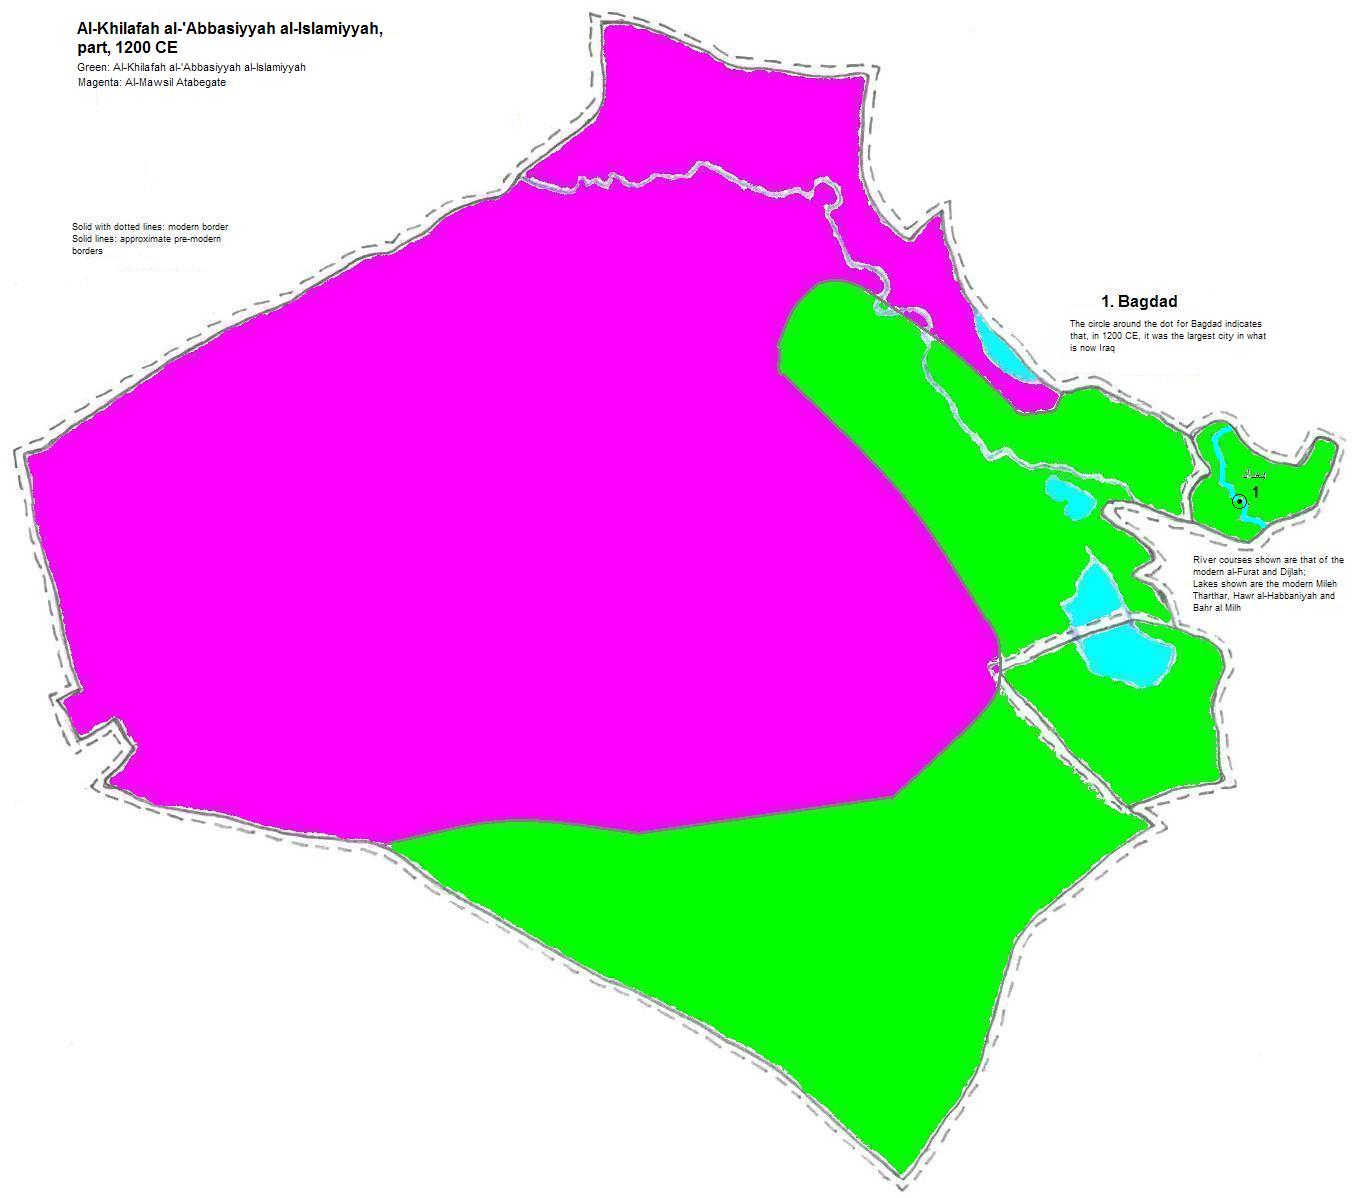 map showing part of Al-Khilafah al-'Abbasiyyah al-Islamiyyah, 1200 CE